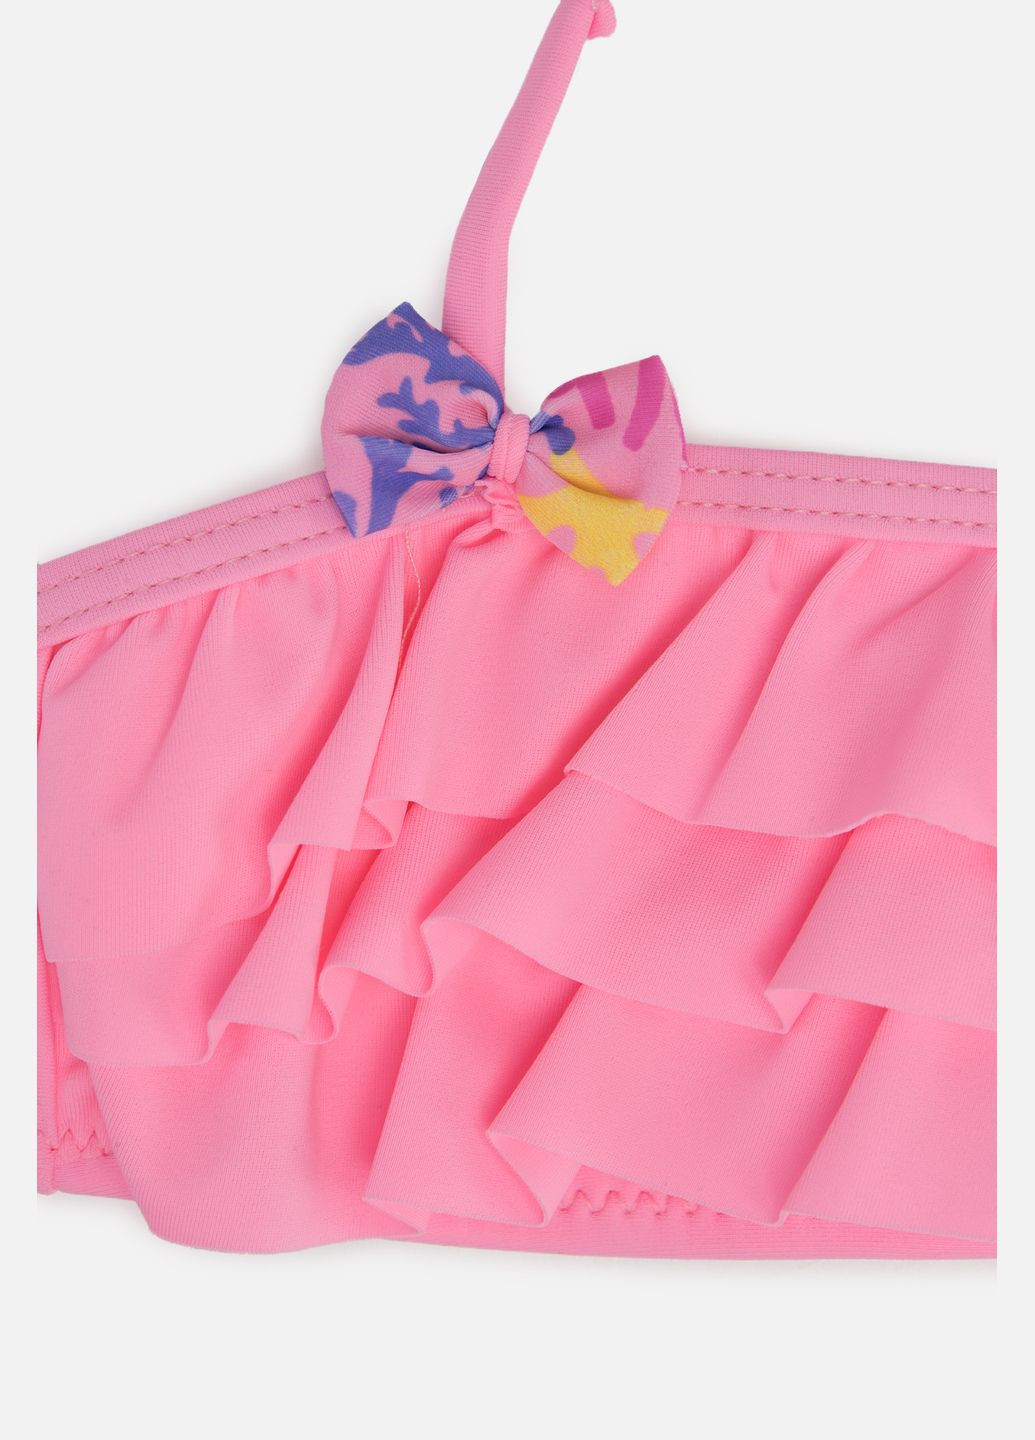 Розовый летний раздельный купальник для девочки цвет розовый цб-00250870 Teres